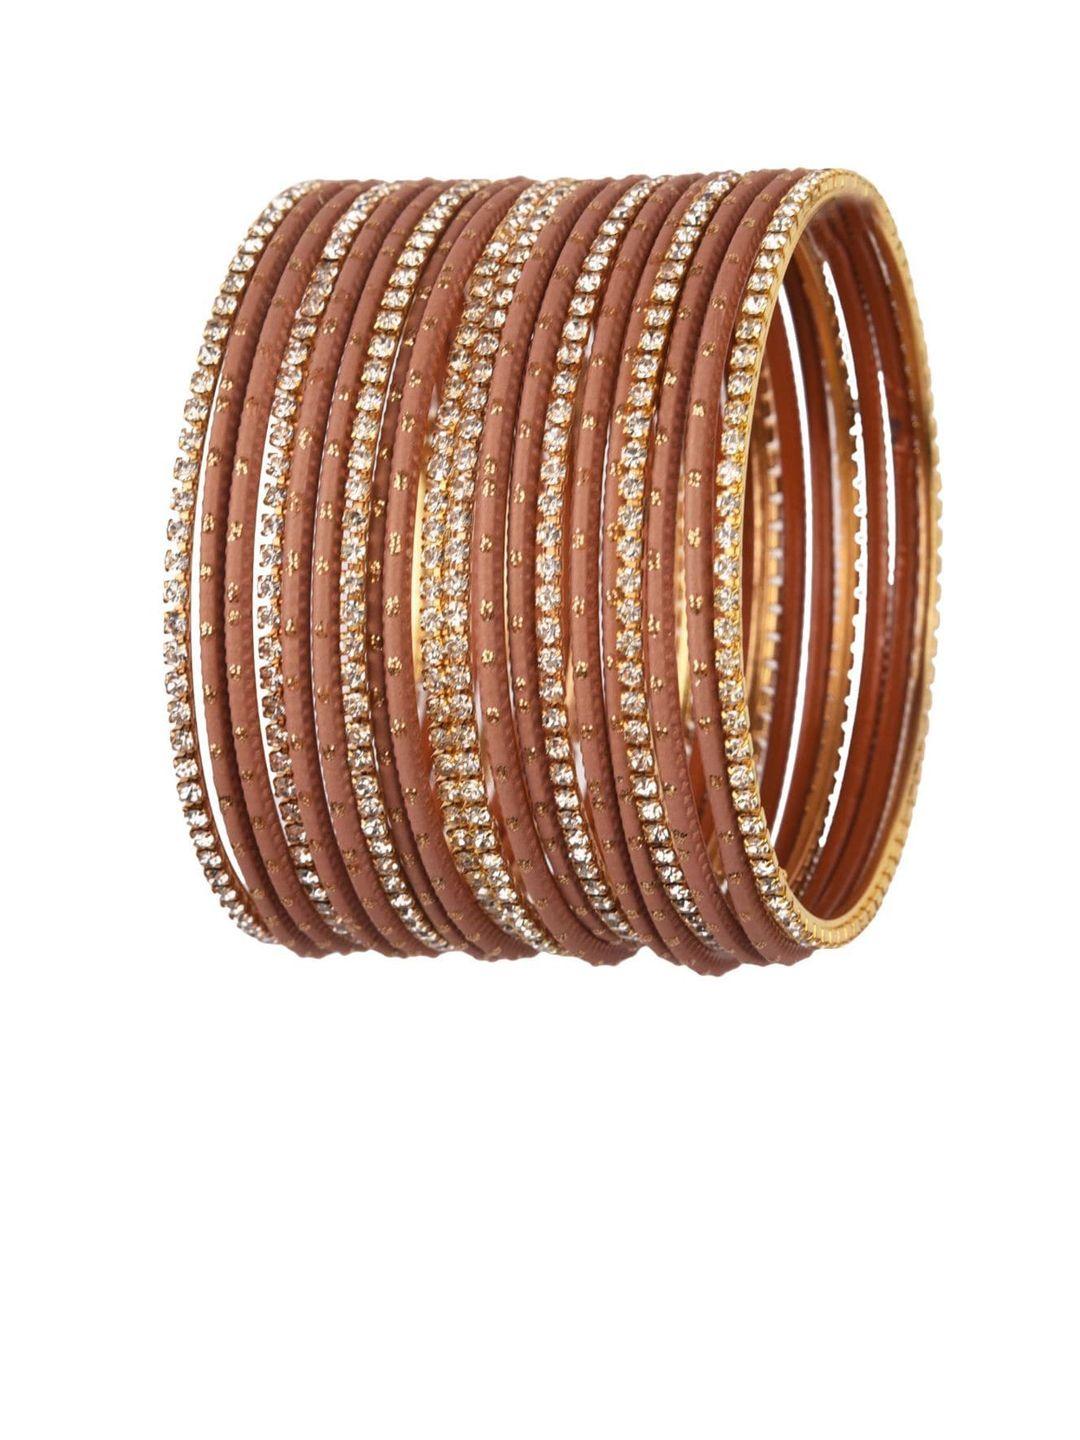 efulgenz set of 20 brown & gold-toned cz crystals studded bangle